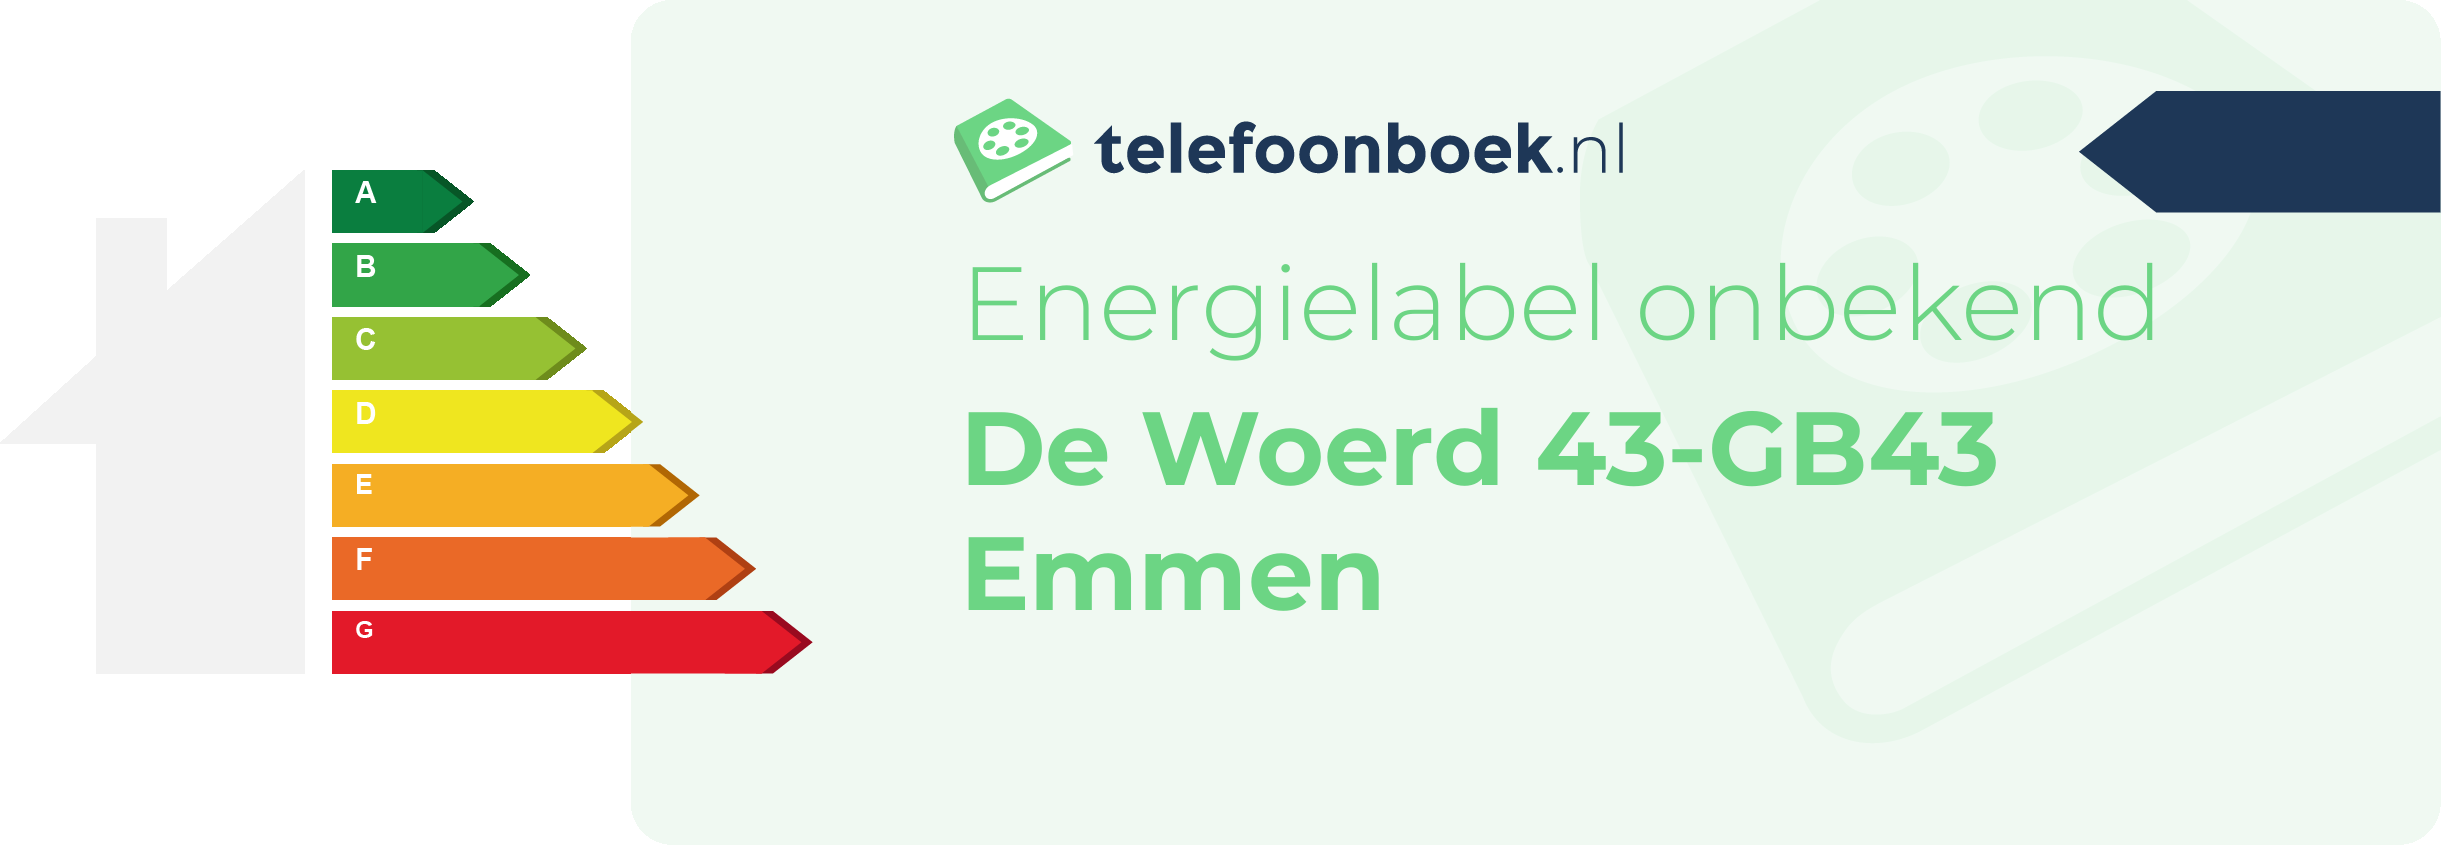 Energielabel De Woerd 43-GB43 Emmen